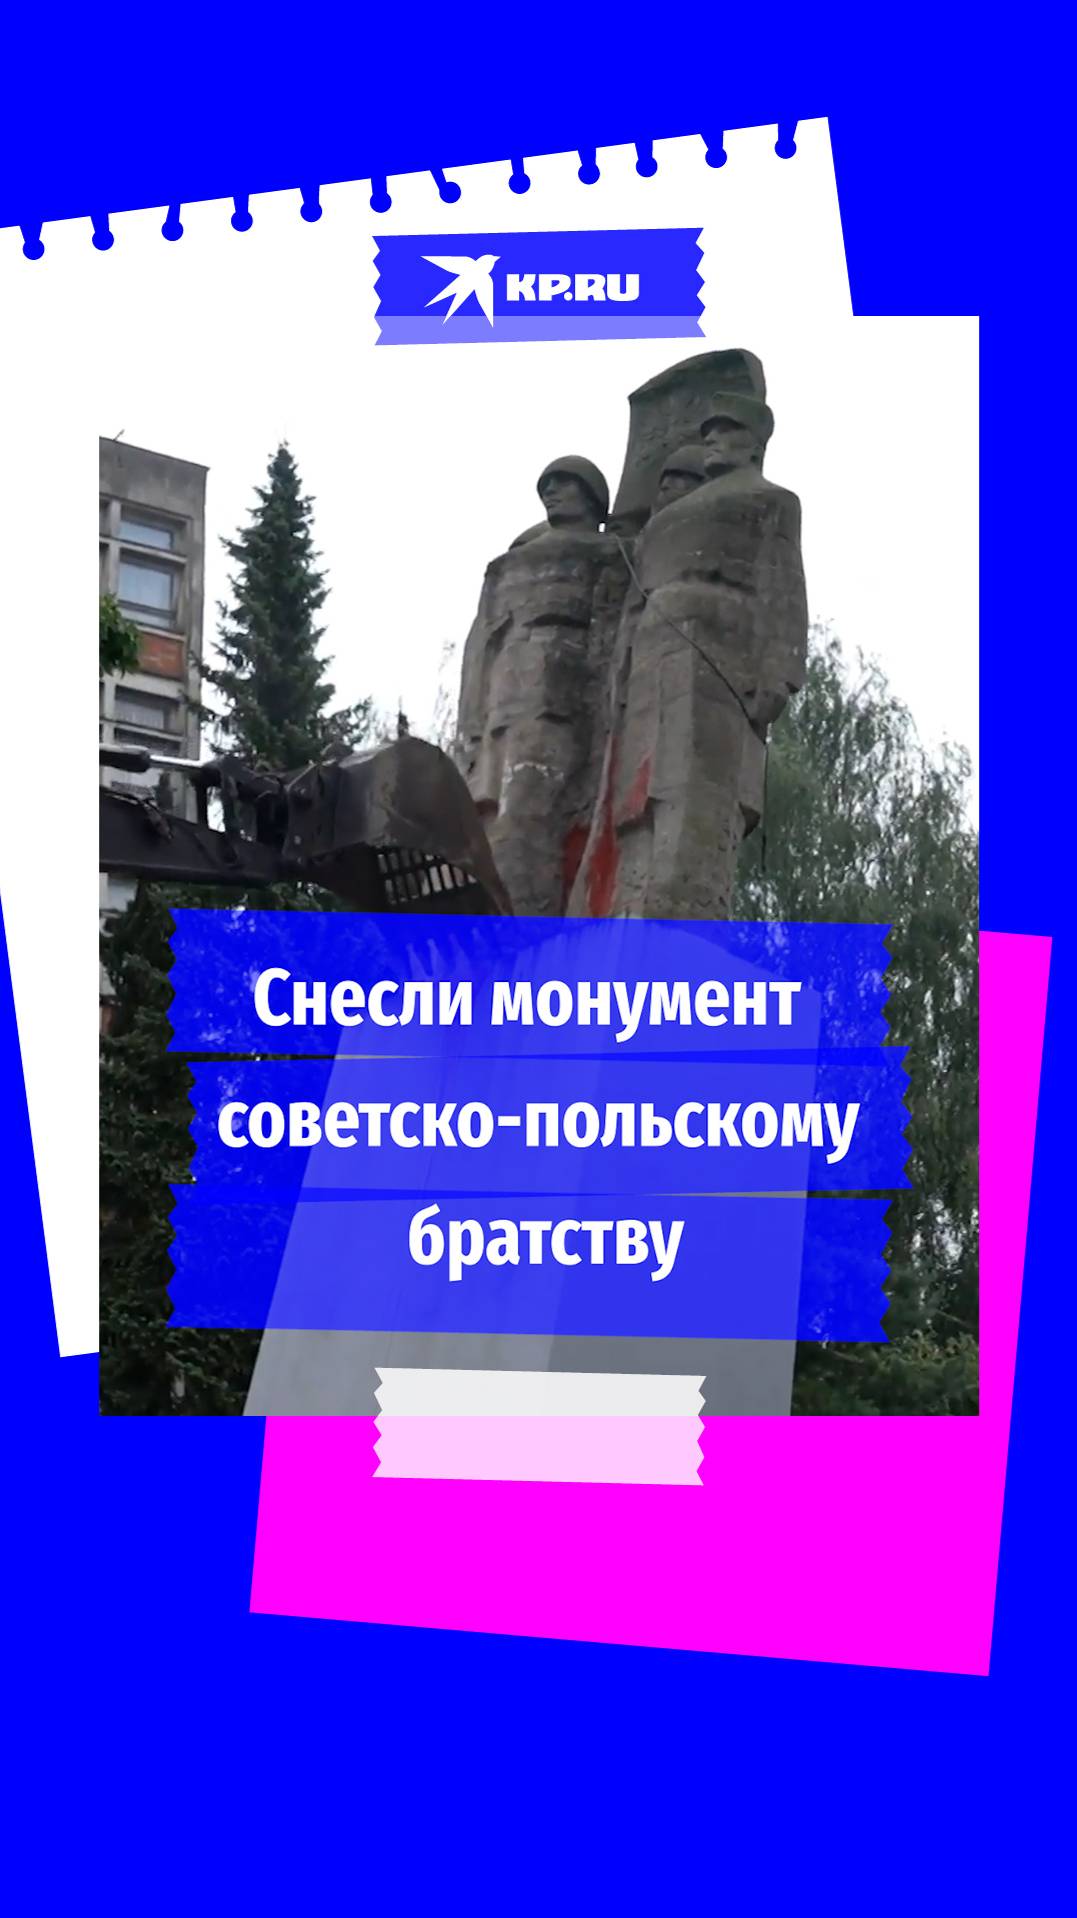 В Польше снесли монумент советско-польскому братству по оружию